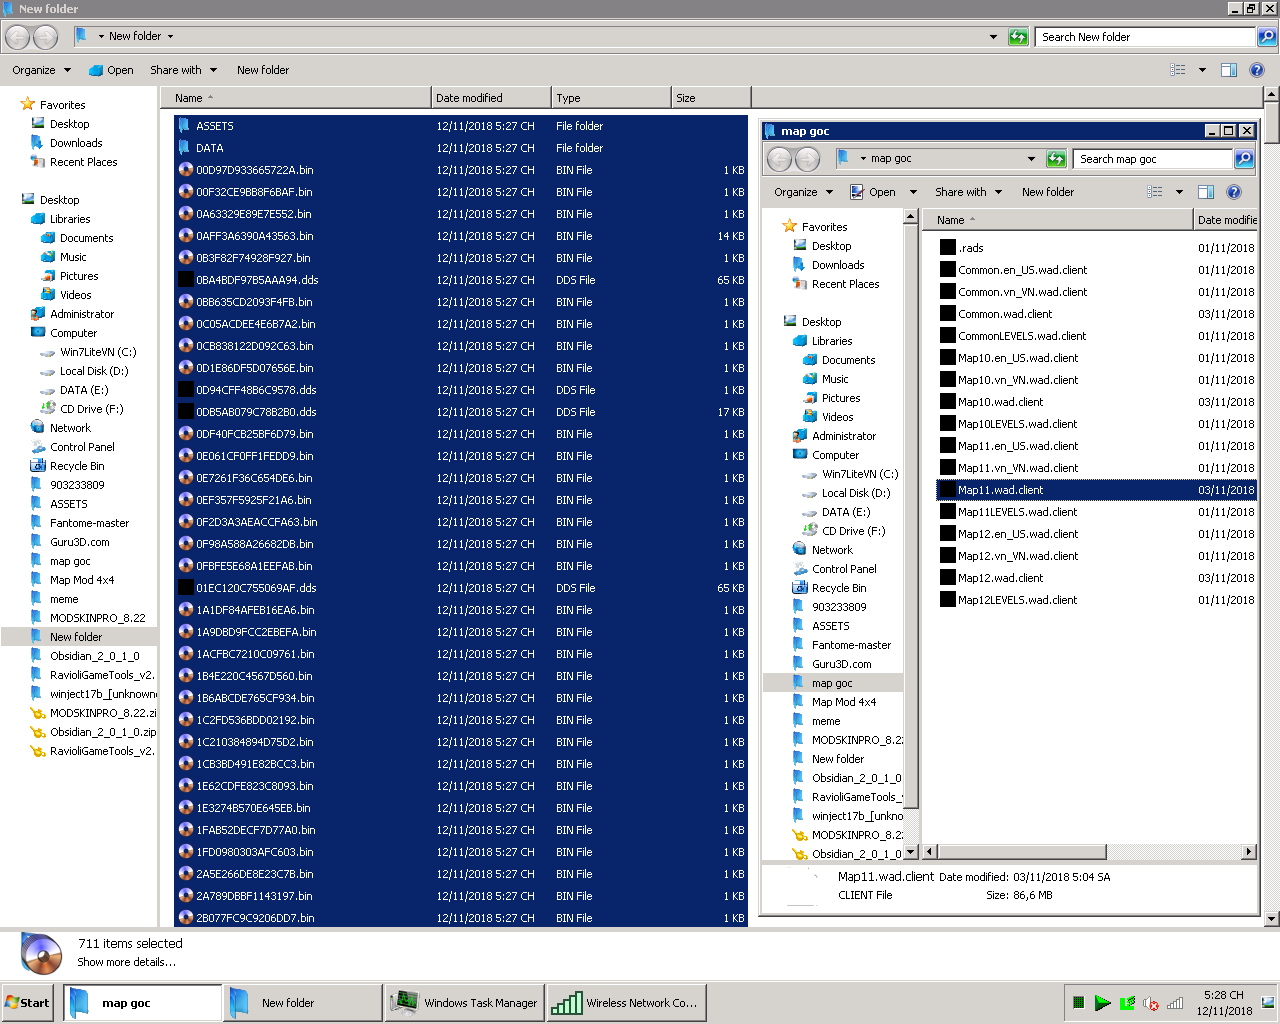 AE cho mình hỏi tool nào nén đc tất cả folder và file về 1 file dạng .wad.client vậy ak?